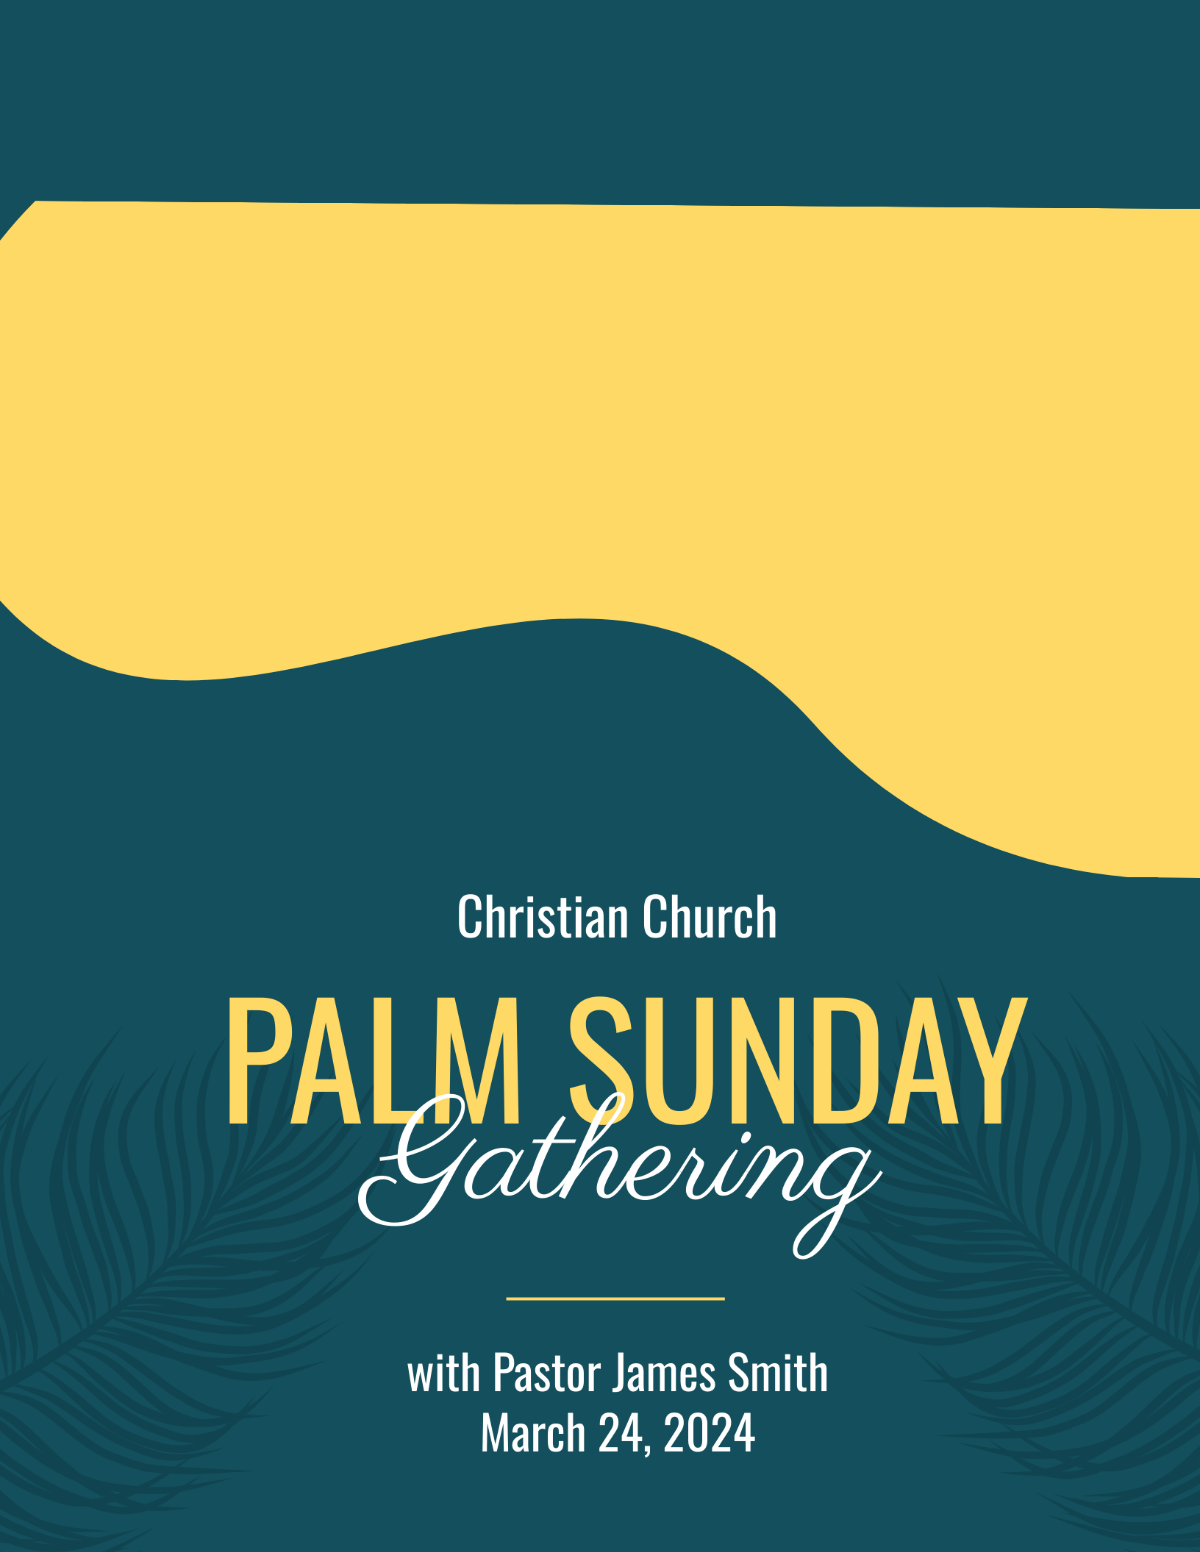 Free Palm Sunday Celebration Flyer Template